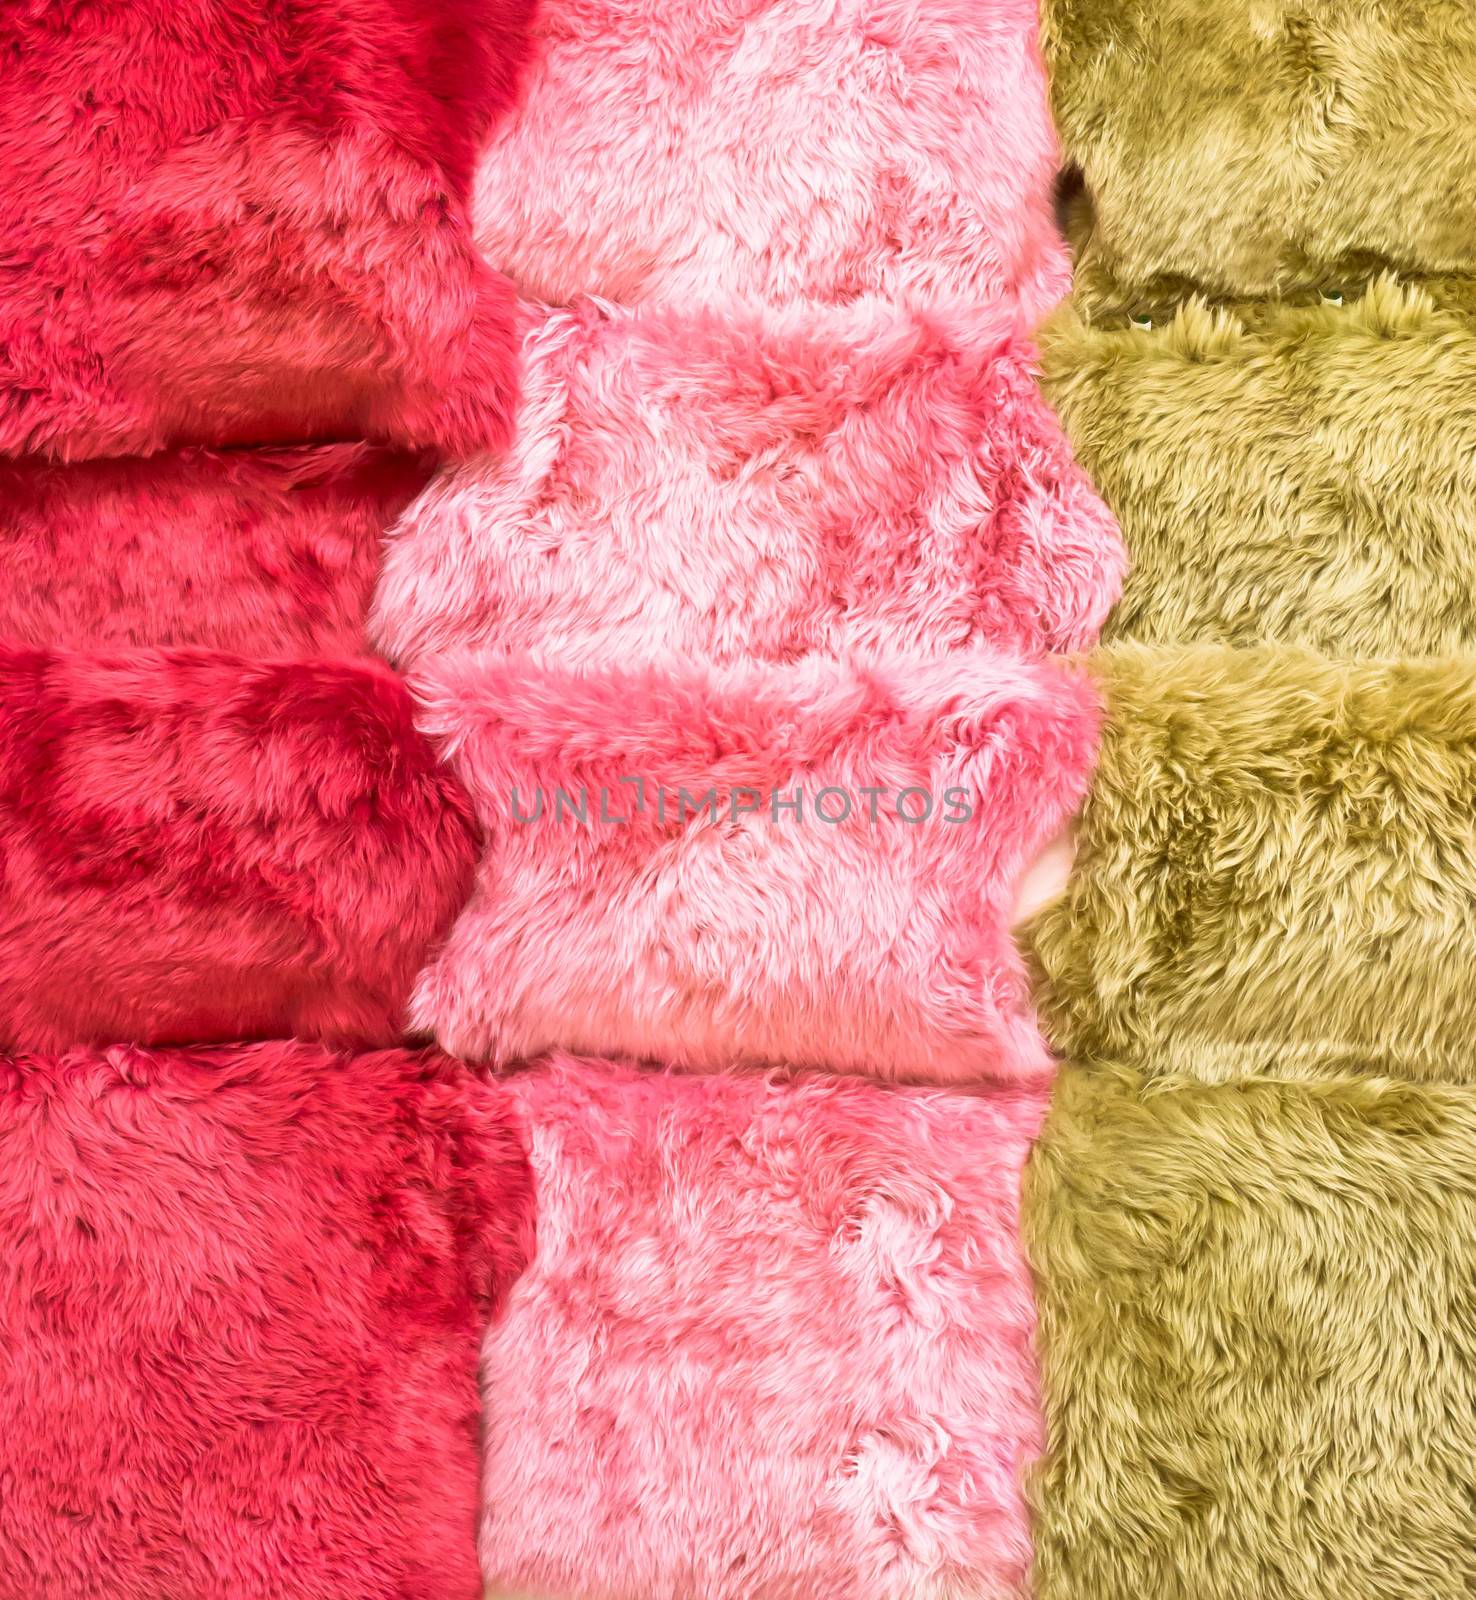 Sheepskin rugs by trgowanlock